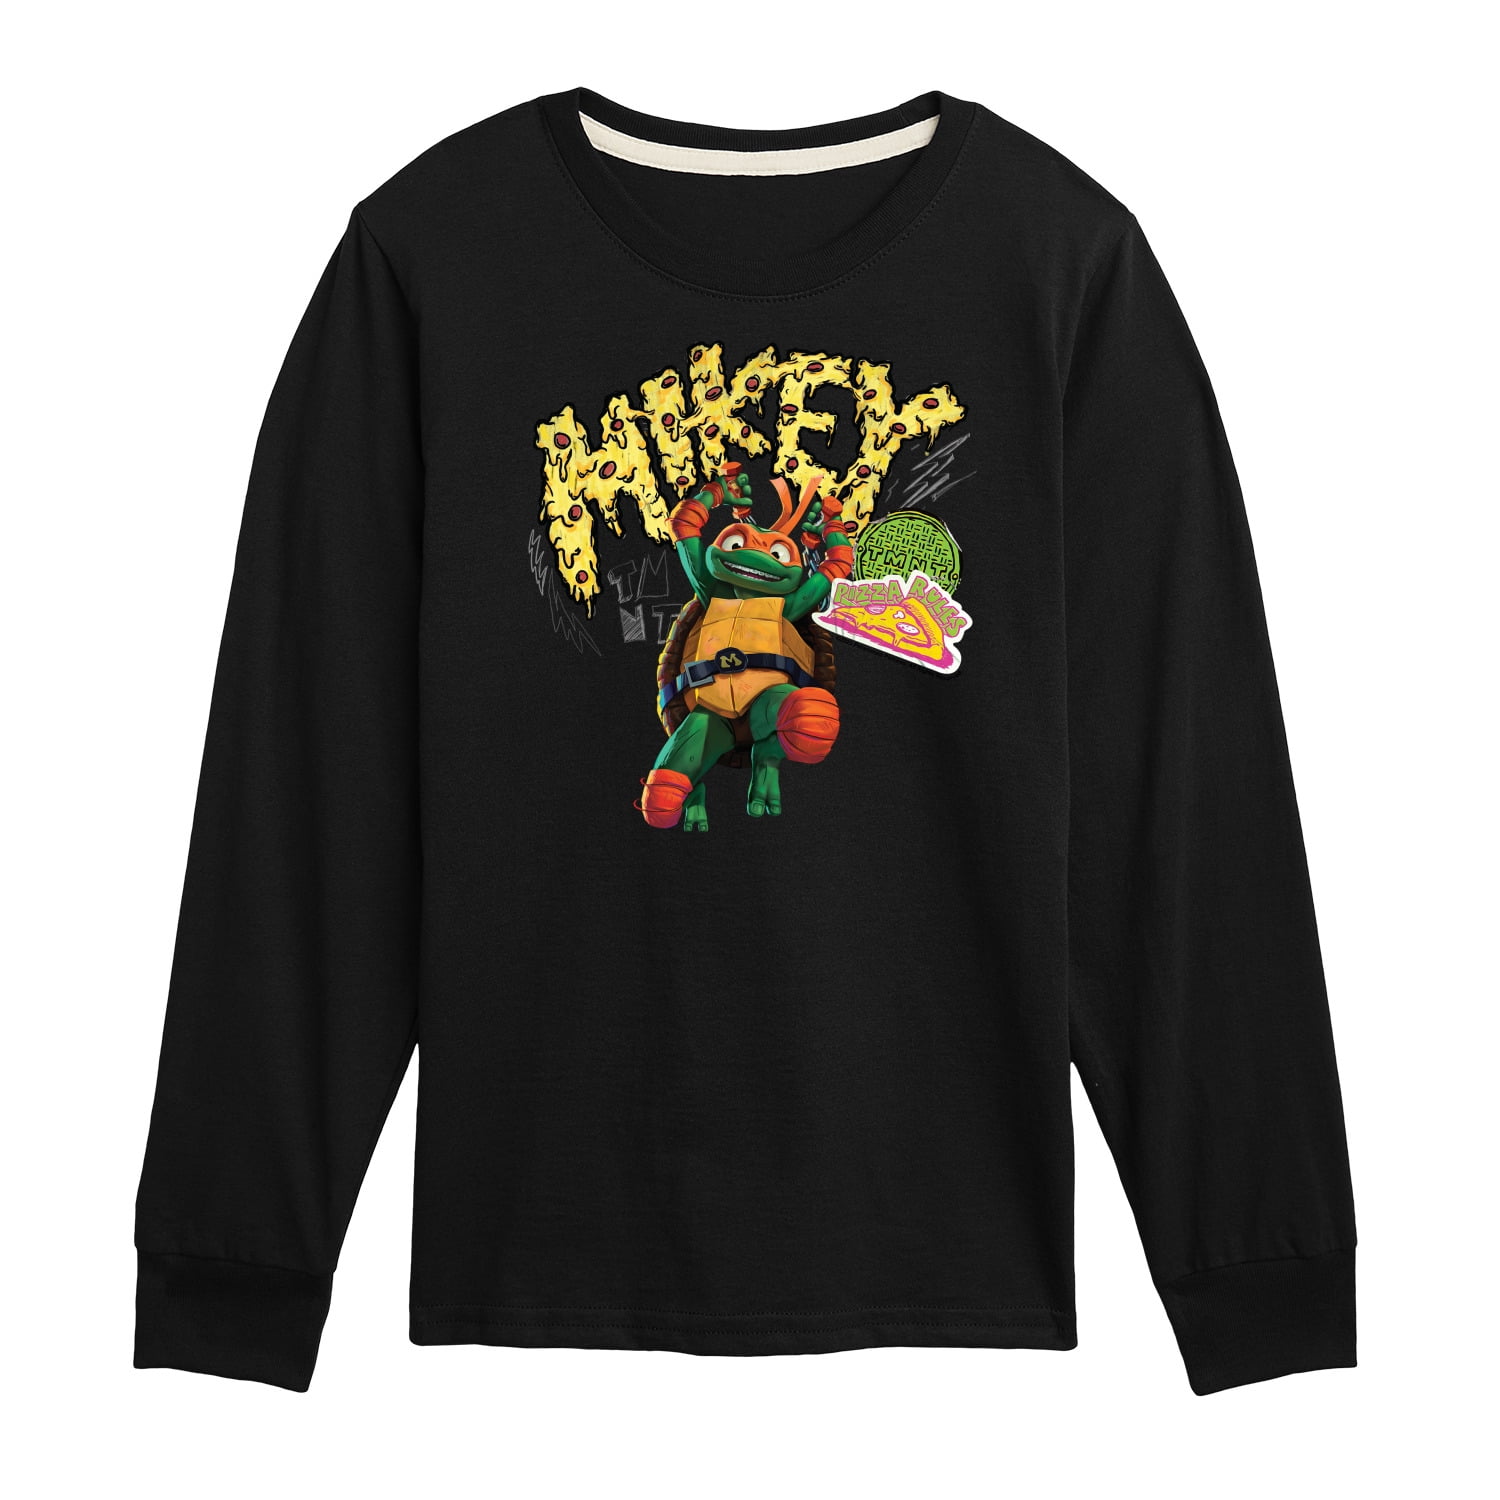 Teenage Mutant Ninja Turtles Mikey Adult Short Sleeve T-Shirt